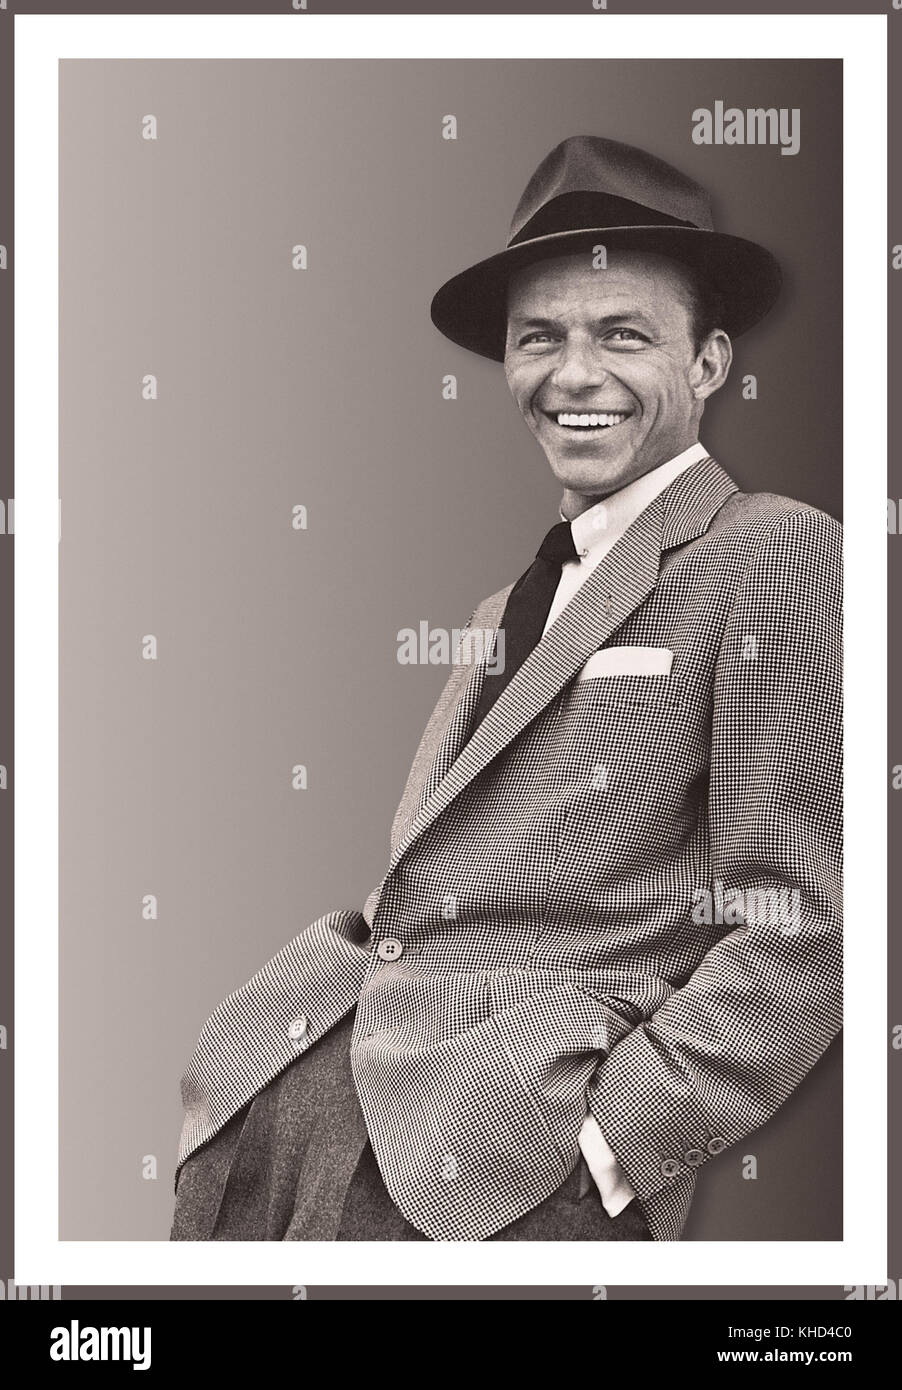 FRANK SINATRA PORTRAIT INFORMEL des années 1950 ton RVB noir et blanc Francis Albert Sinatra 12 décembre 1915 – 14 mai 1998 était un chanteur, acteur et producteur américain qui était l'un des artistes musicaux les plus populaires et influents du XXe siècle. Il est l'un des artistes de musique les plus vendus de tous les temps, ayant vendu plus de 150 millions de disques dans le monde entier. Né à Hoboken, dans le New Jersey, d'immigrants italiens, Sinatra a commencé sa carrière musicale à l'époque de l'oscillation avec les bandleaders Harry James et Tommy Dorsey. Banque D'Images